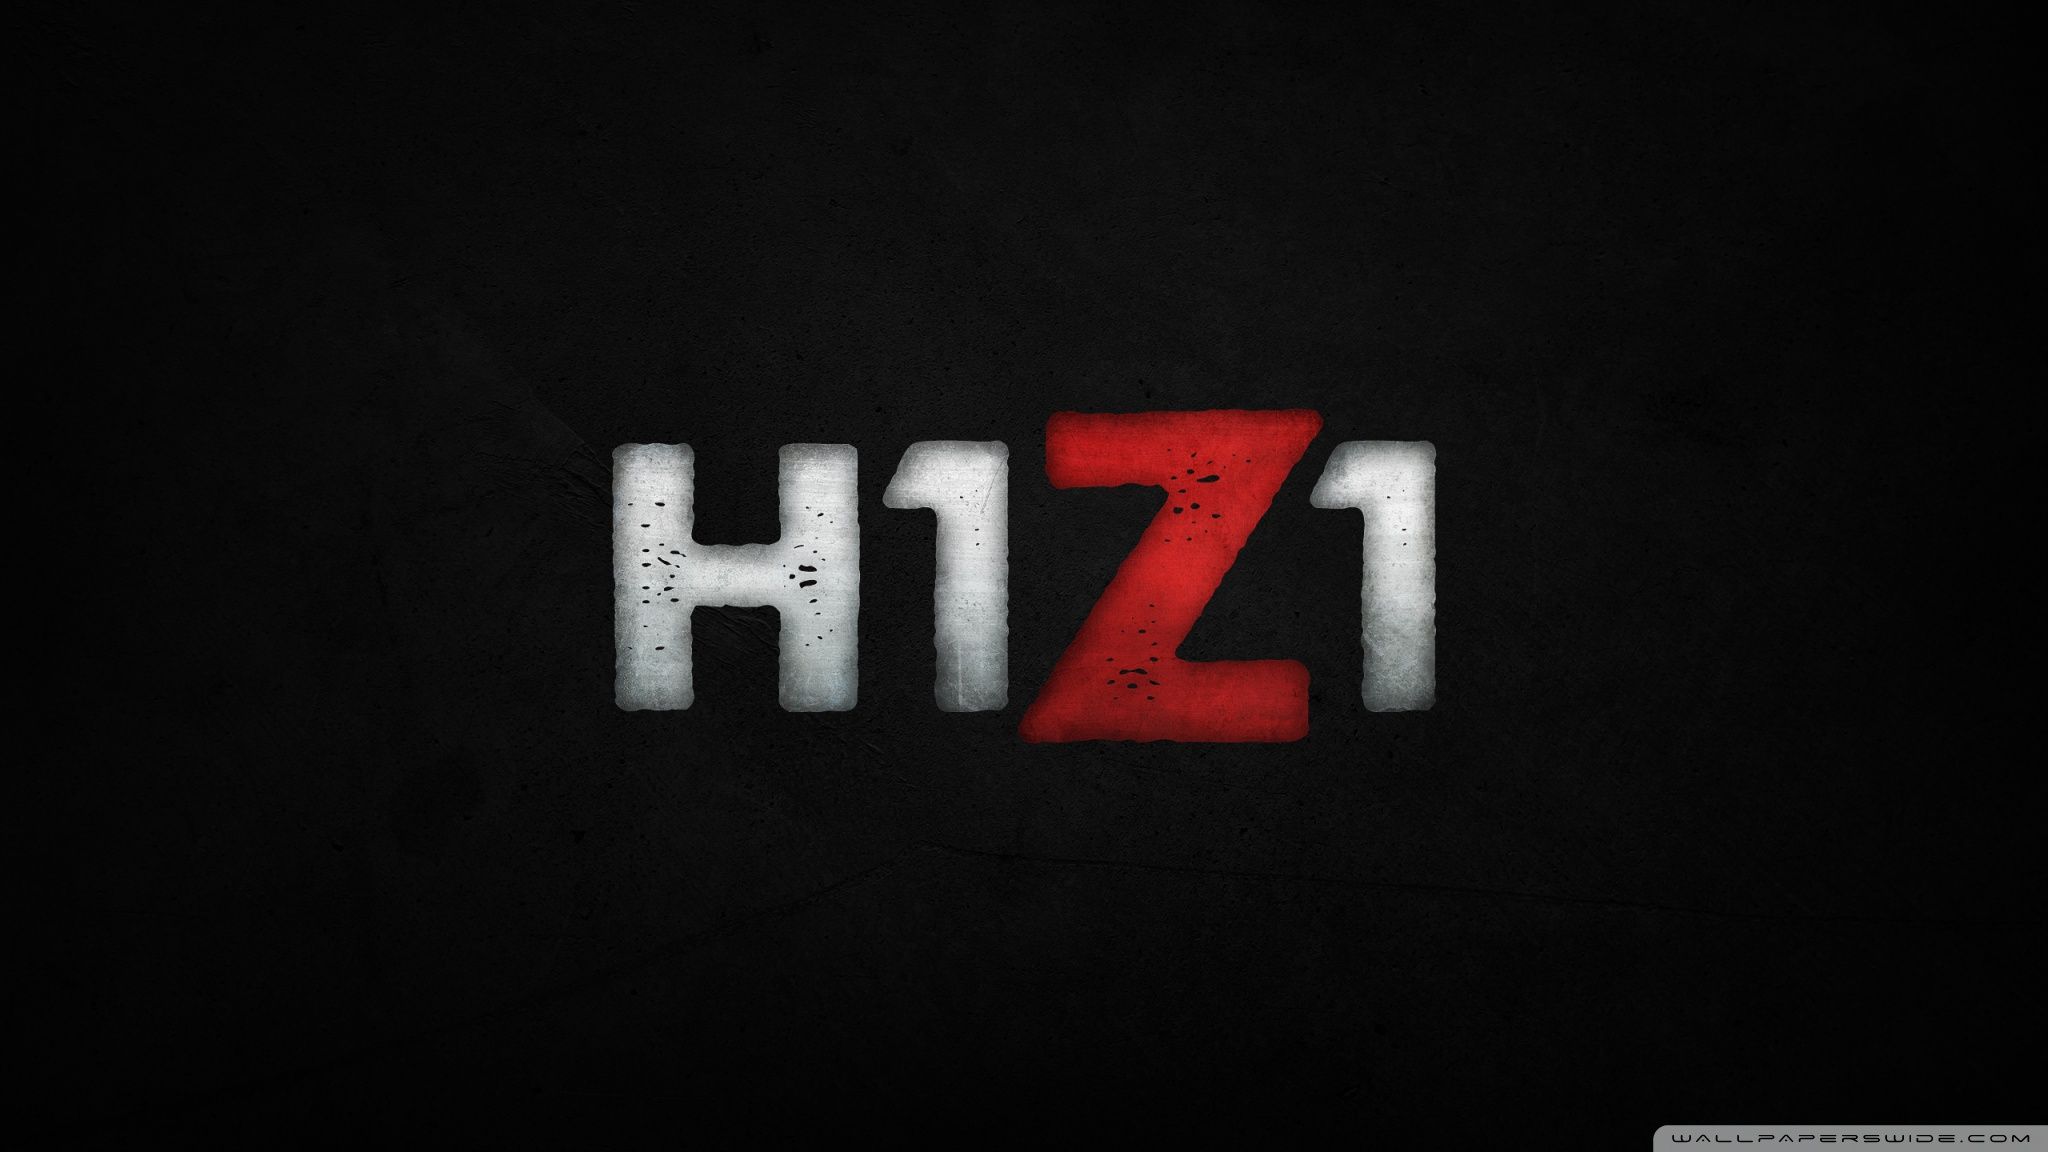 H1Z1 Ultra HD Desktop Background Wallpaper for: Widescreen